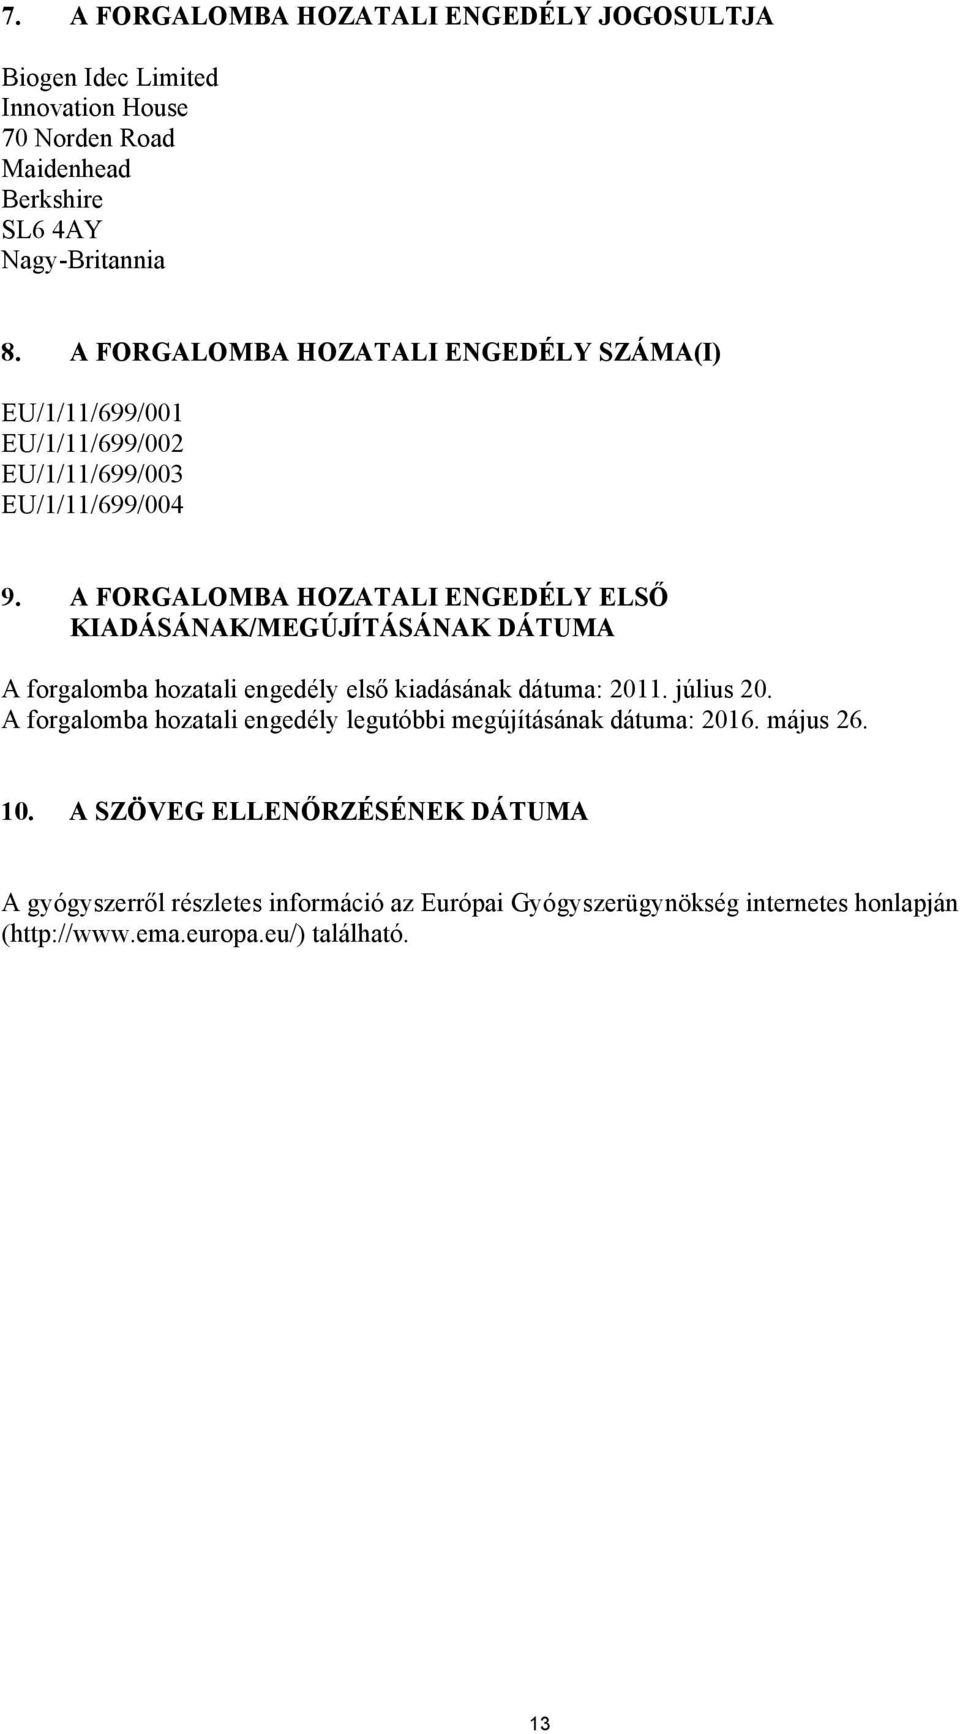 A FORGALOMBA HOZATALI ENGEDÉLY ELSŐ KIADÁSÁNAK/MEGÚJÍTÁSÁNAK DÁTUMA A forgalomba hozatali engedély első kiadásának dátuma: 2011. július 20.